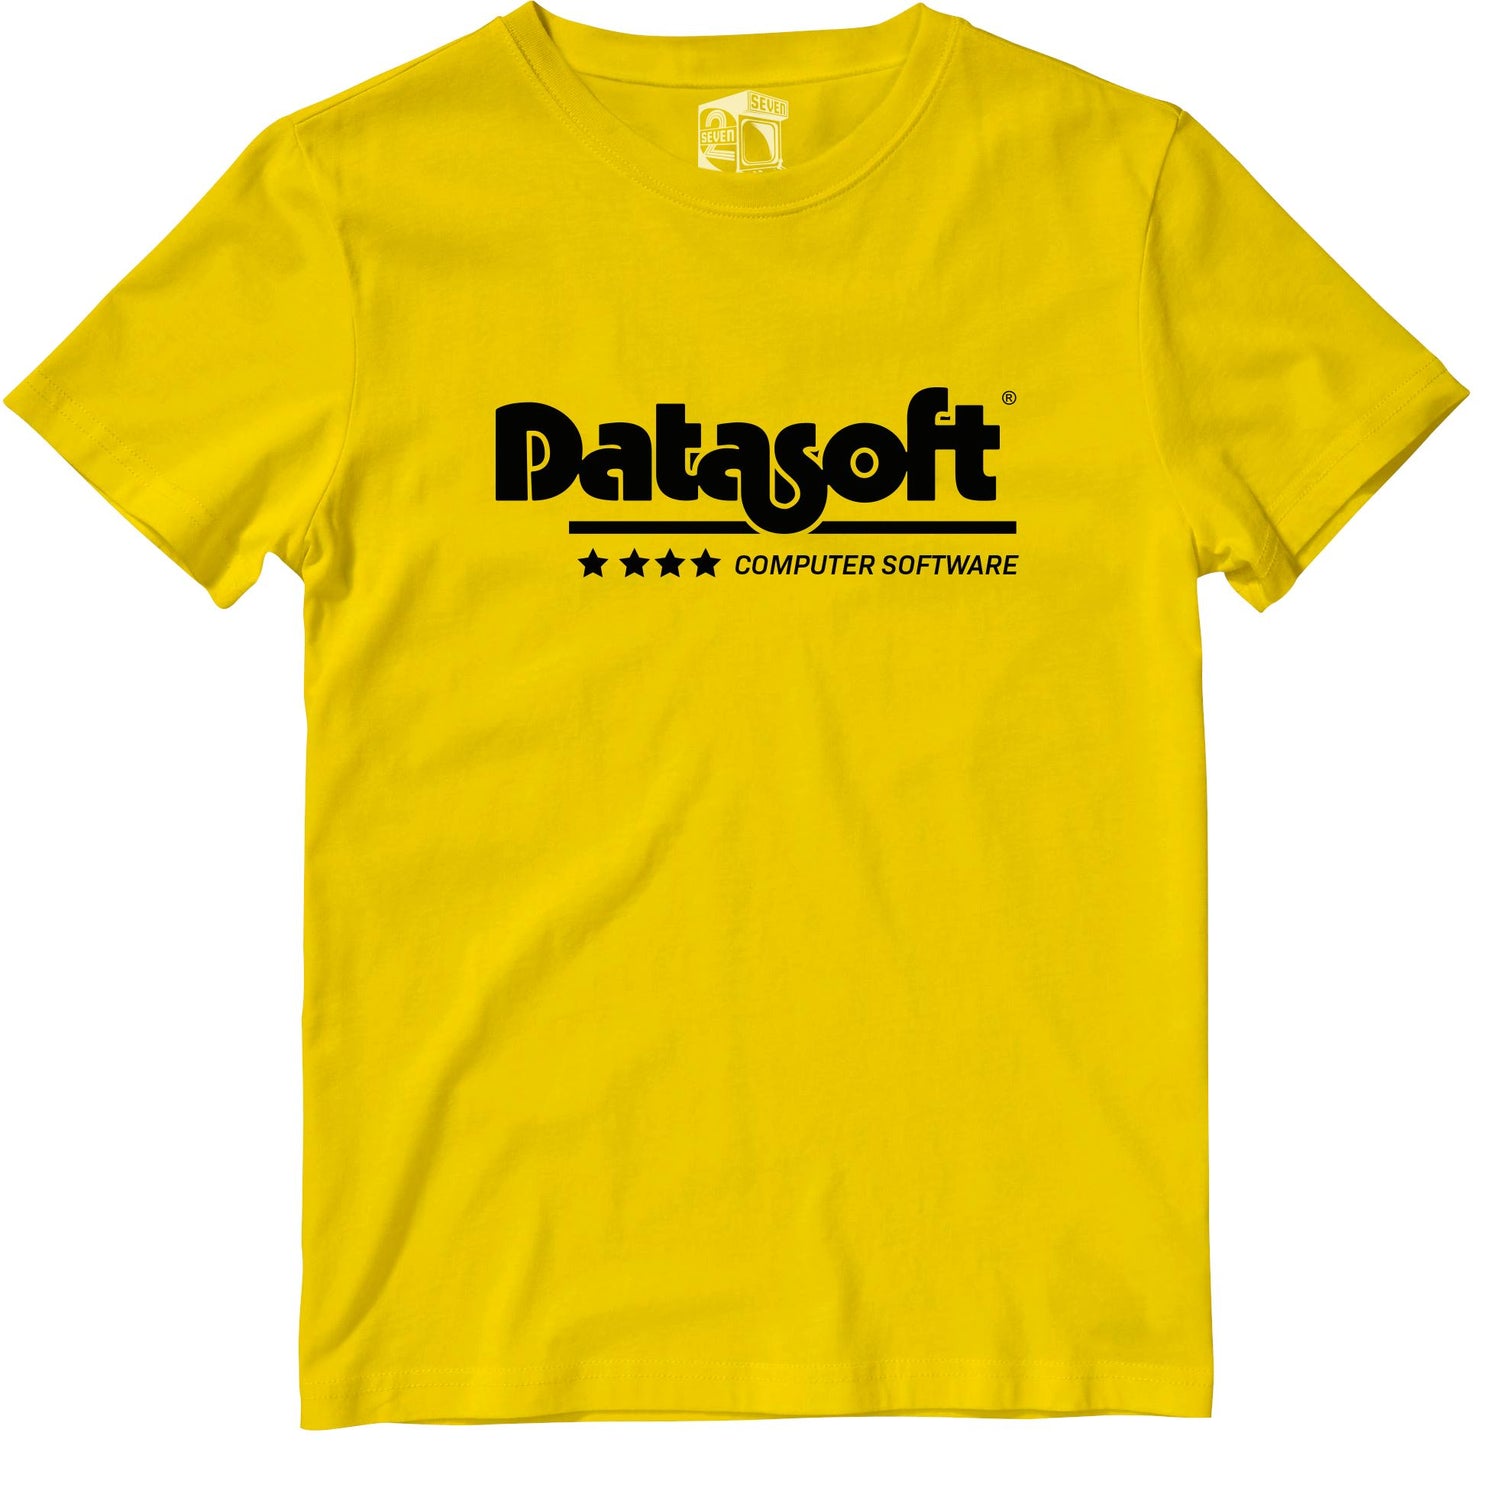 Datatsoft